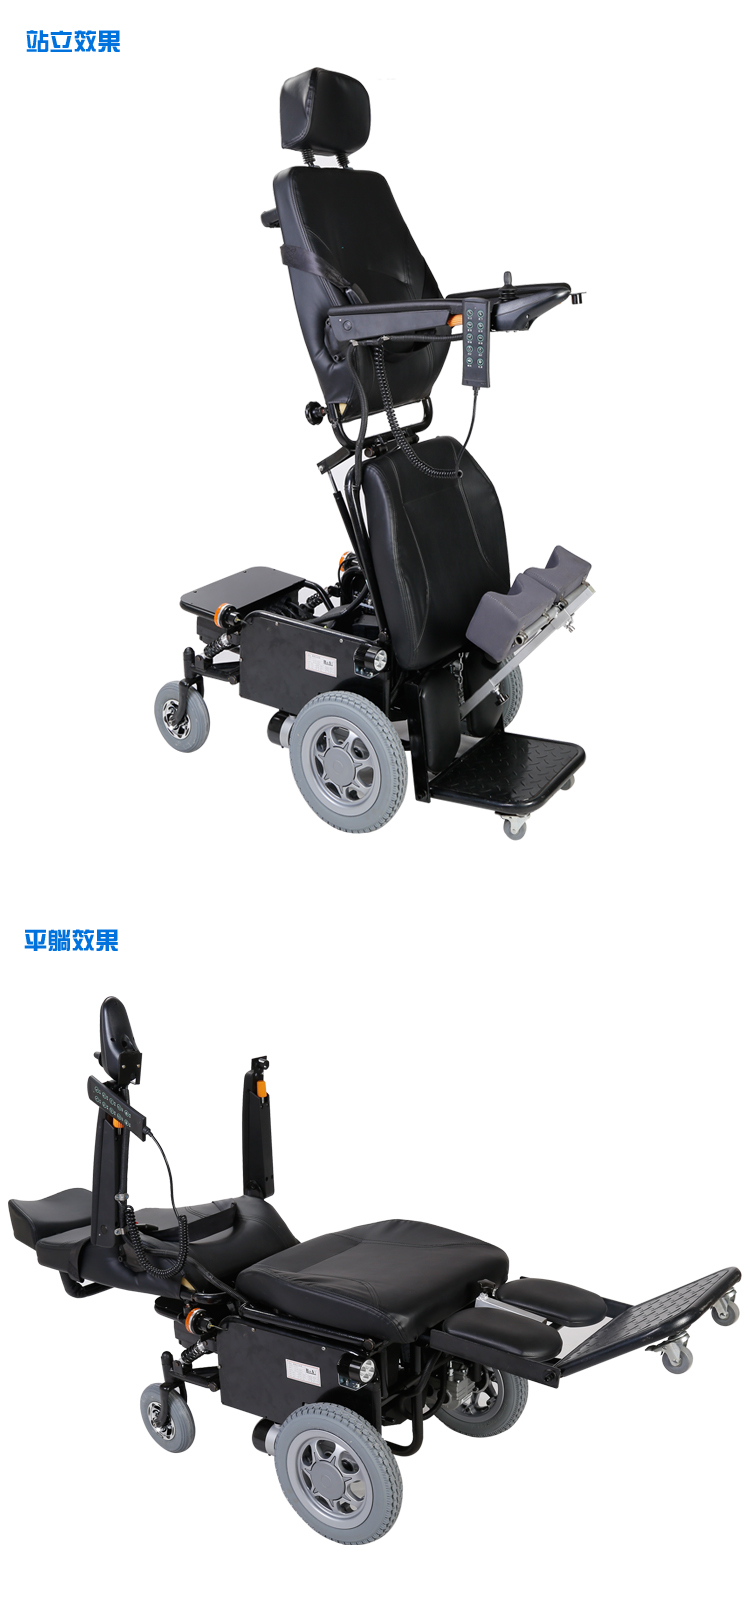 山东博奥电动多功能轮椅直销厂家老年人代步车康复锻炼残疾人轮椅图片